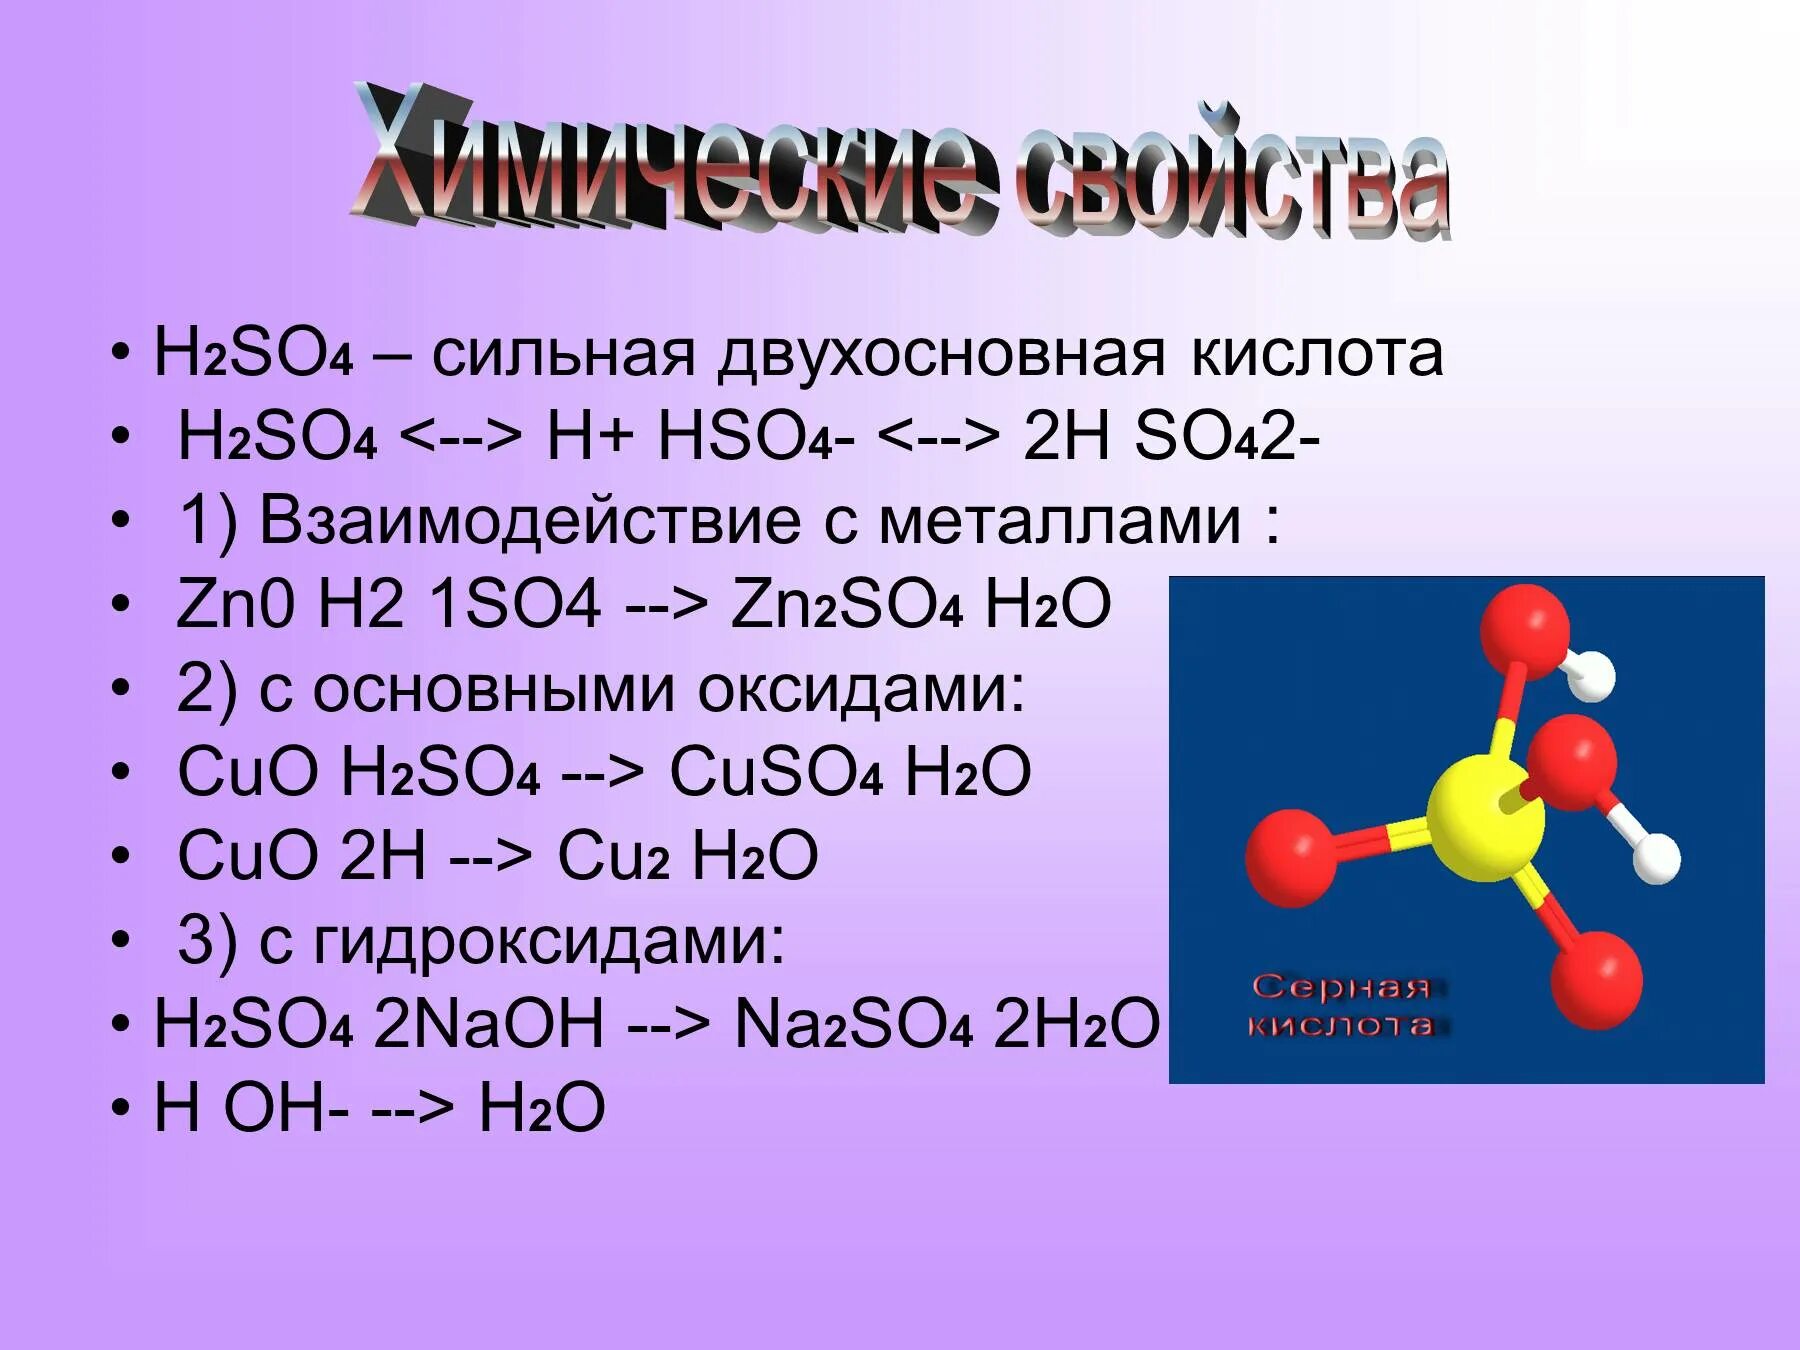 Zn zn0. Формула серной кислоты h2so4. Химическая формула серной кислоты h2so4. H2ro4. H2po4 двухосновнаая кислота.